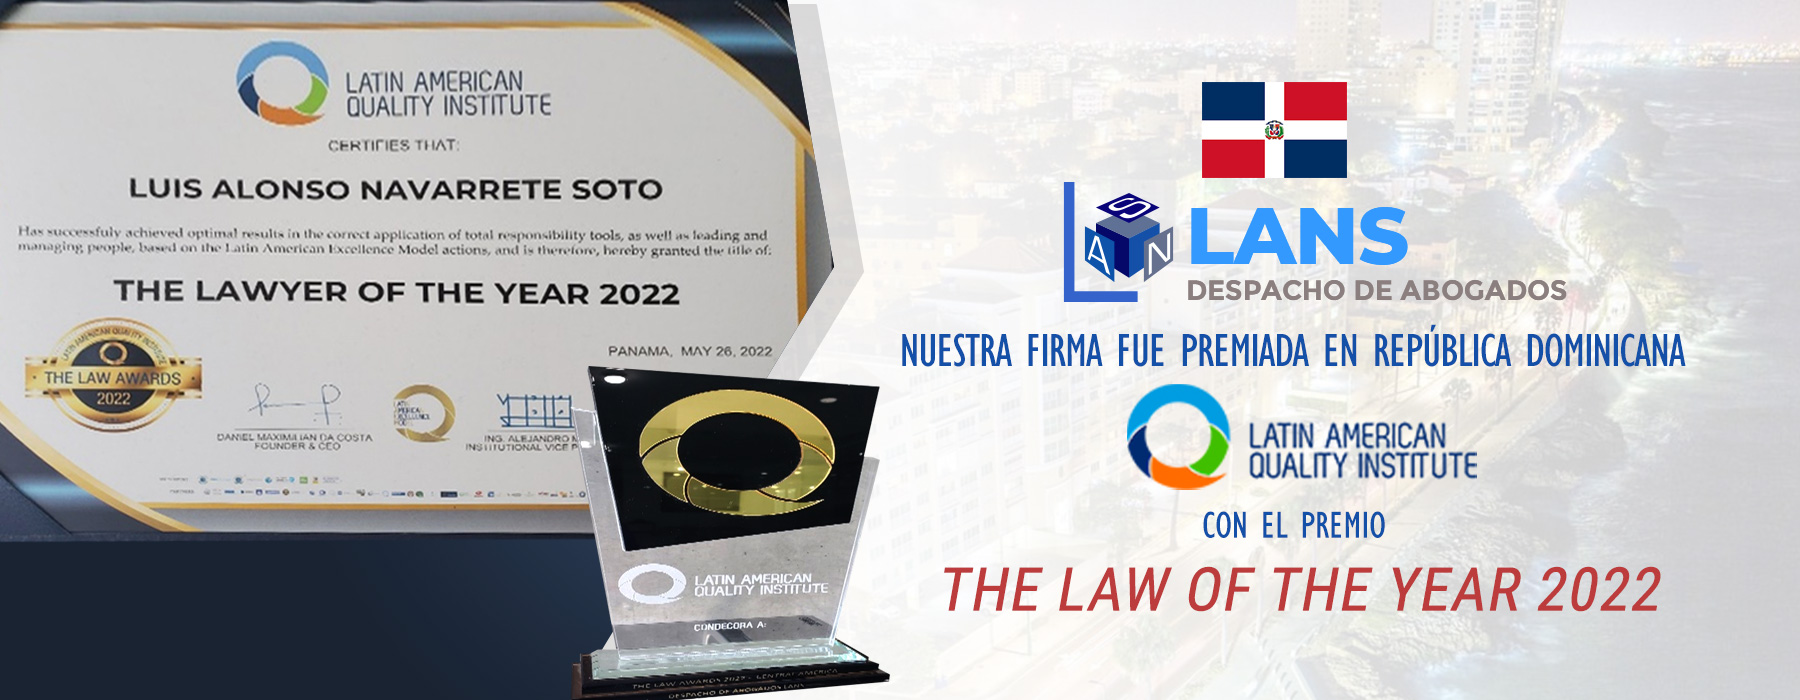 Premio del Latin American Quality Institute en 2022